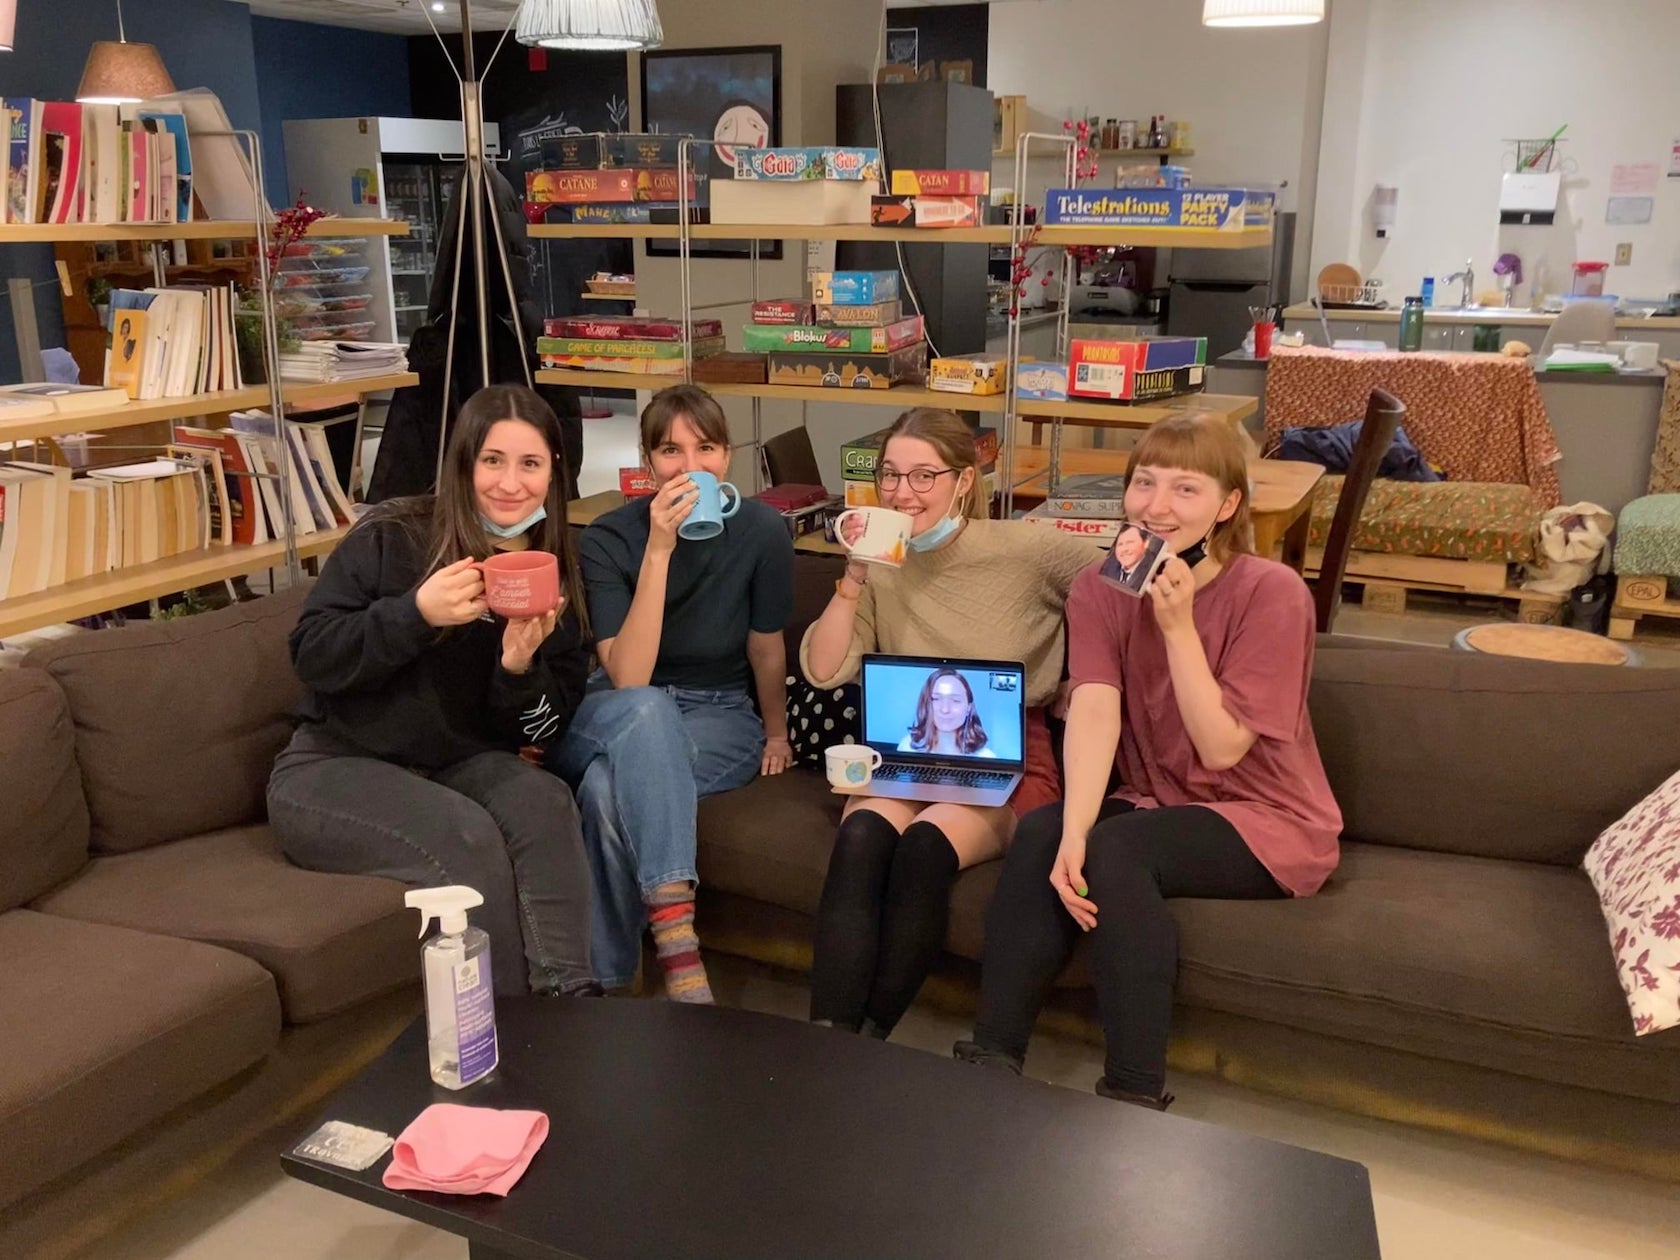 L'image montre les 5 employées du Philanthrope à l'hiver 2022. Elles sont assises sur le sectionnel du café, et tiennent ludiquement de jolies tasses disponibles au café.